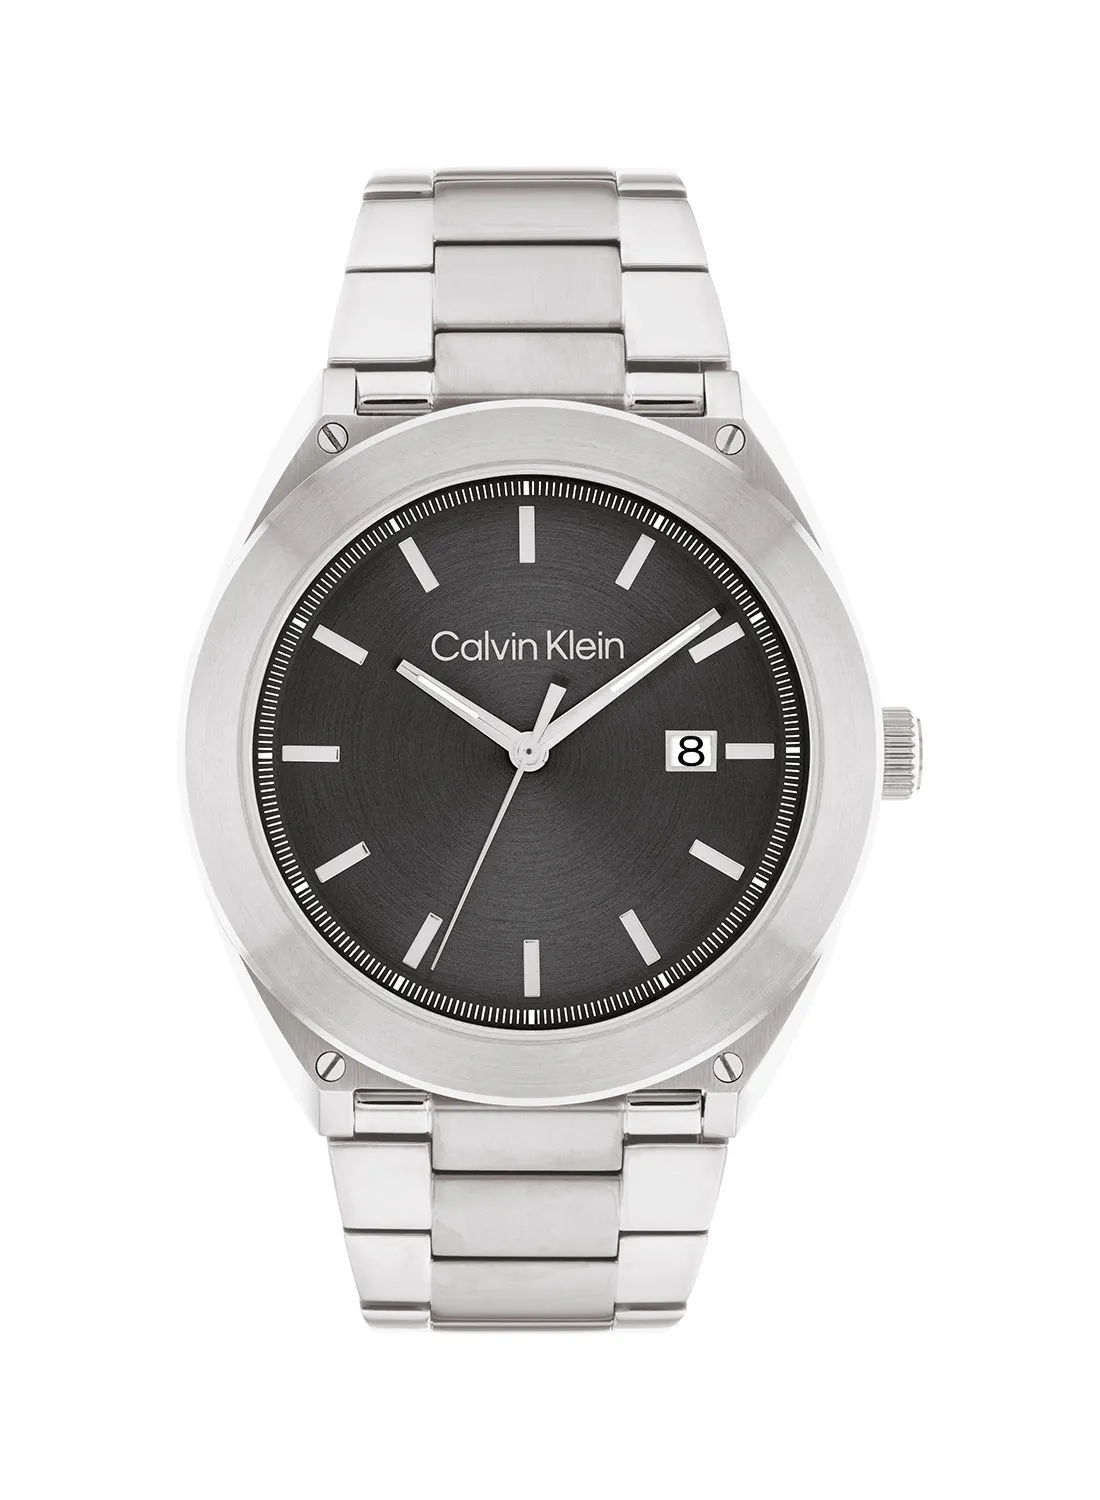 CALVIN KLEIN Casual Essentials Men's Stainless Steel Wrist Watch - 25200196